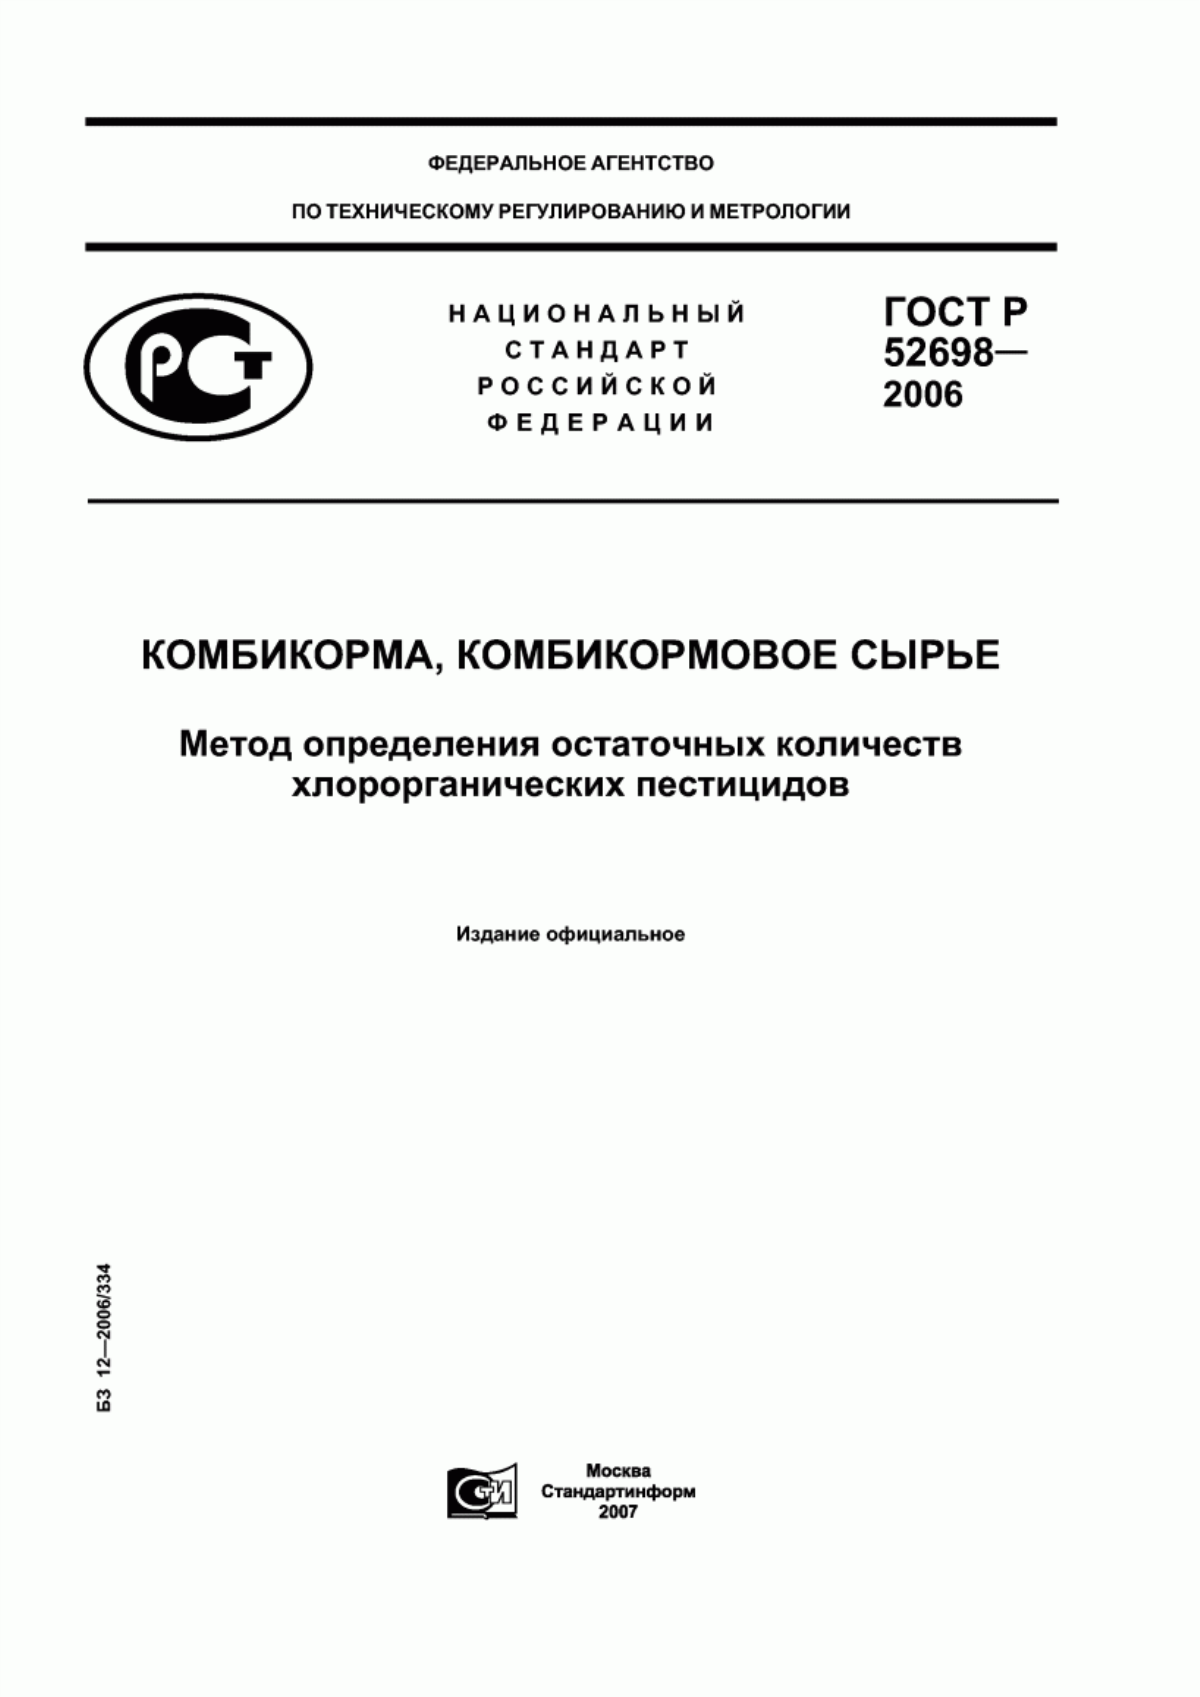 ГОСТ Р 52698-2006 Комбикорма, комбикормовое сырье. Метод определения остаточных количеств хлорорганических пестицидов